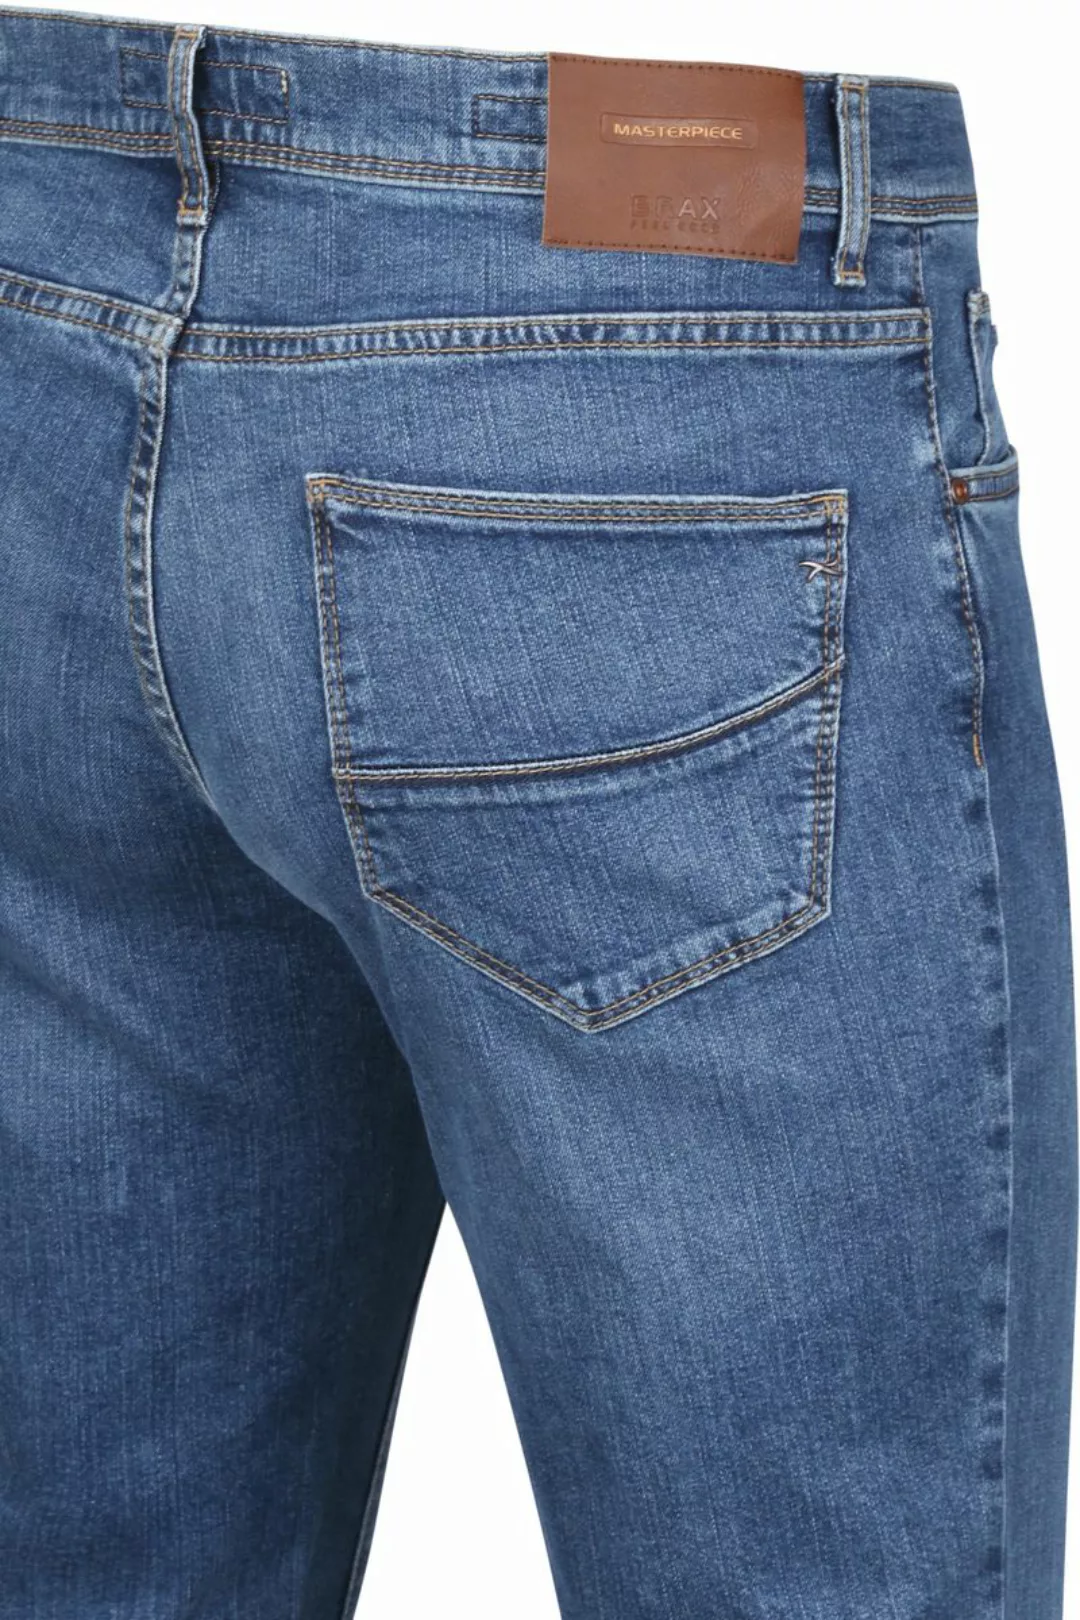 Brax Cadiz Jeans Masterpiece Regular Blau - Größe W 40 - L 36 günstig online kaufen